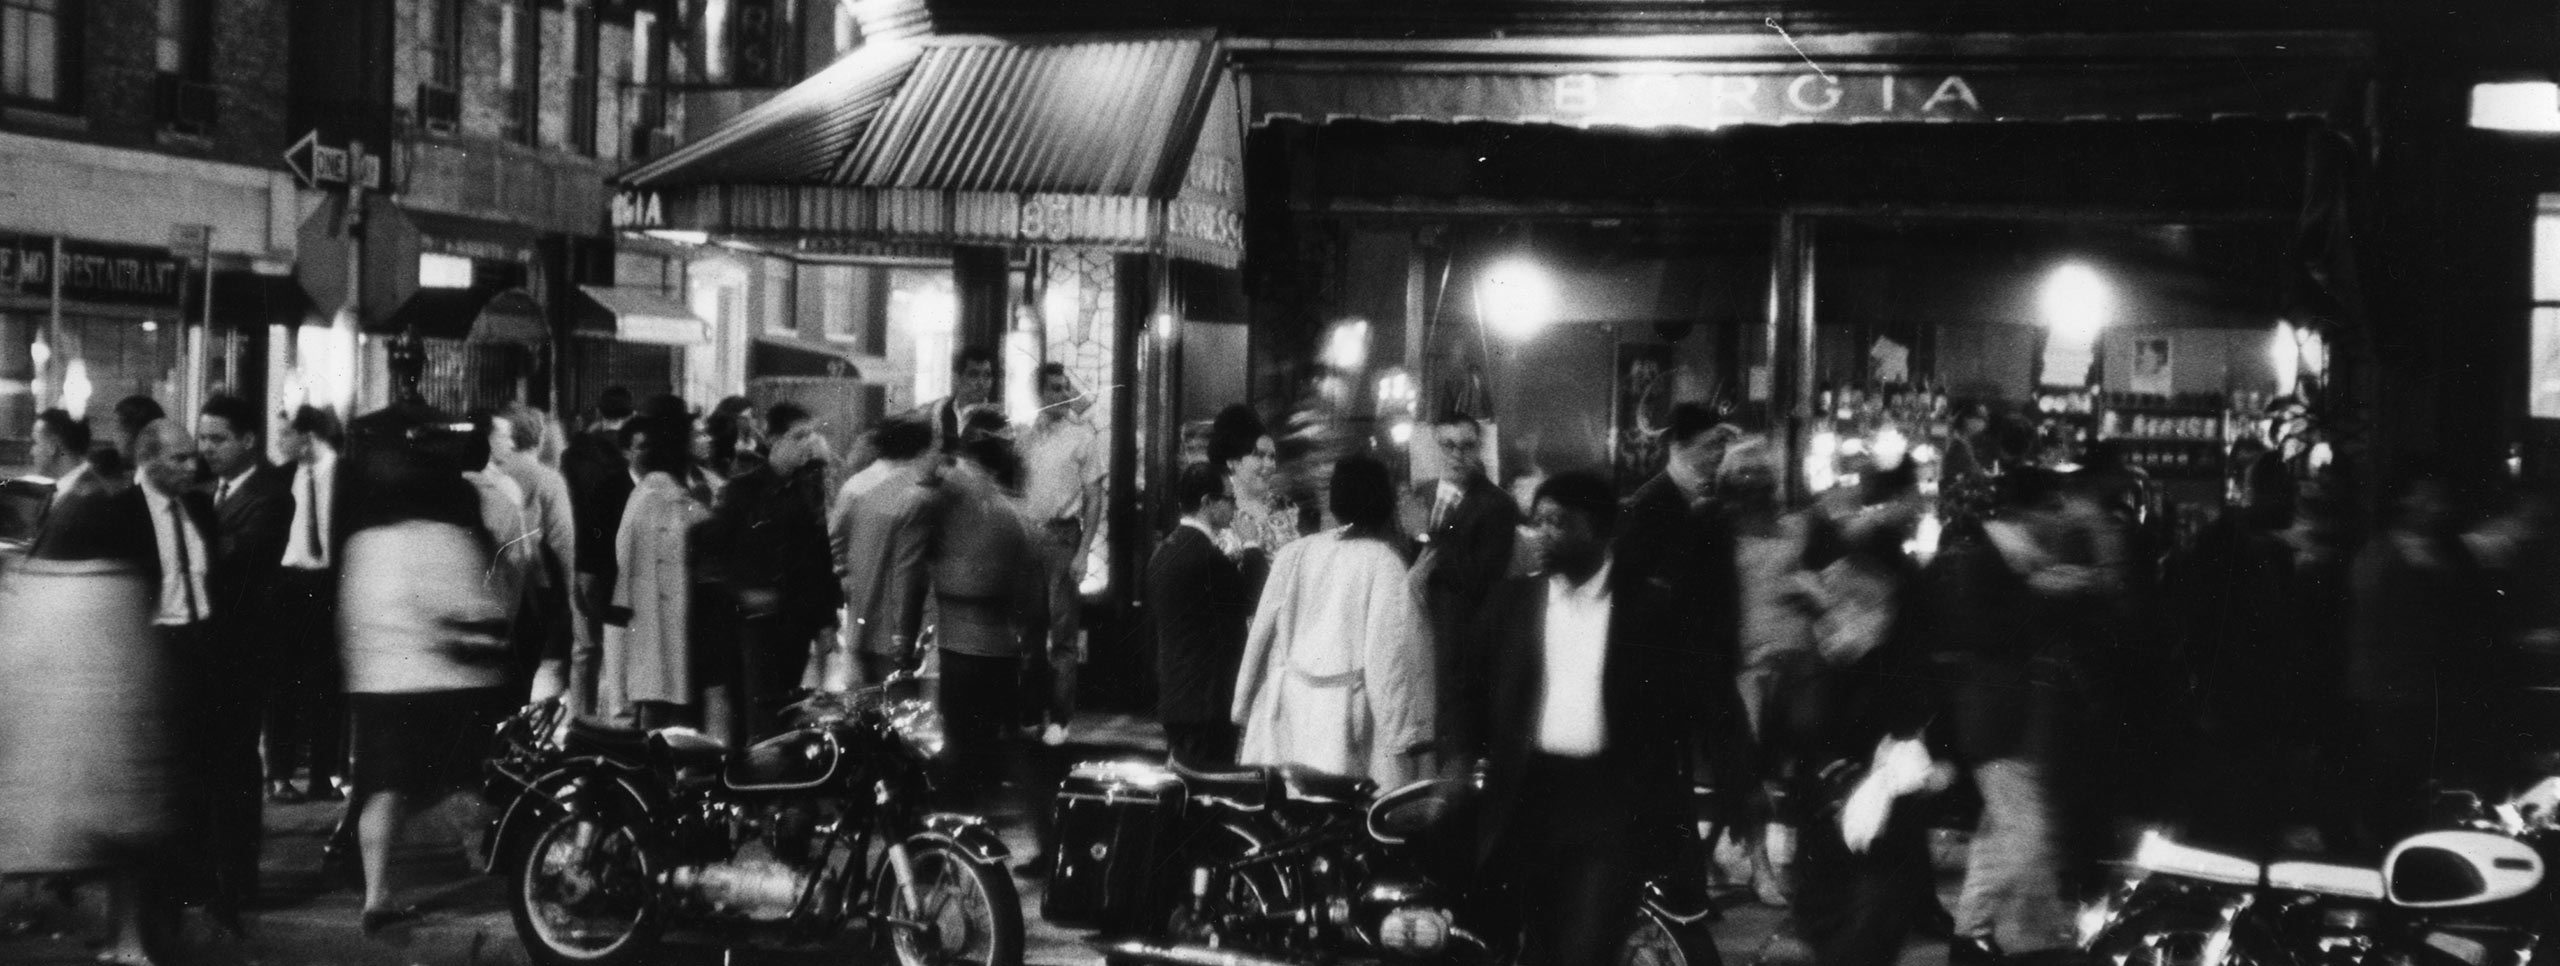 Fotografía de Fred W. McDarrah de una multitud llena de movimiento frente a Caffe Borgia en Greenwich Village